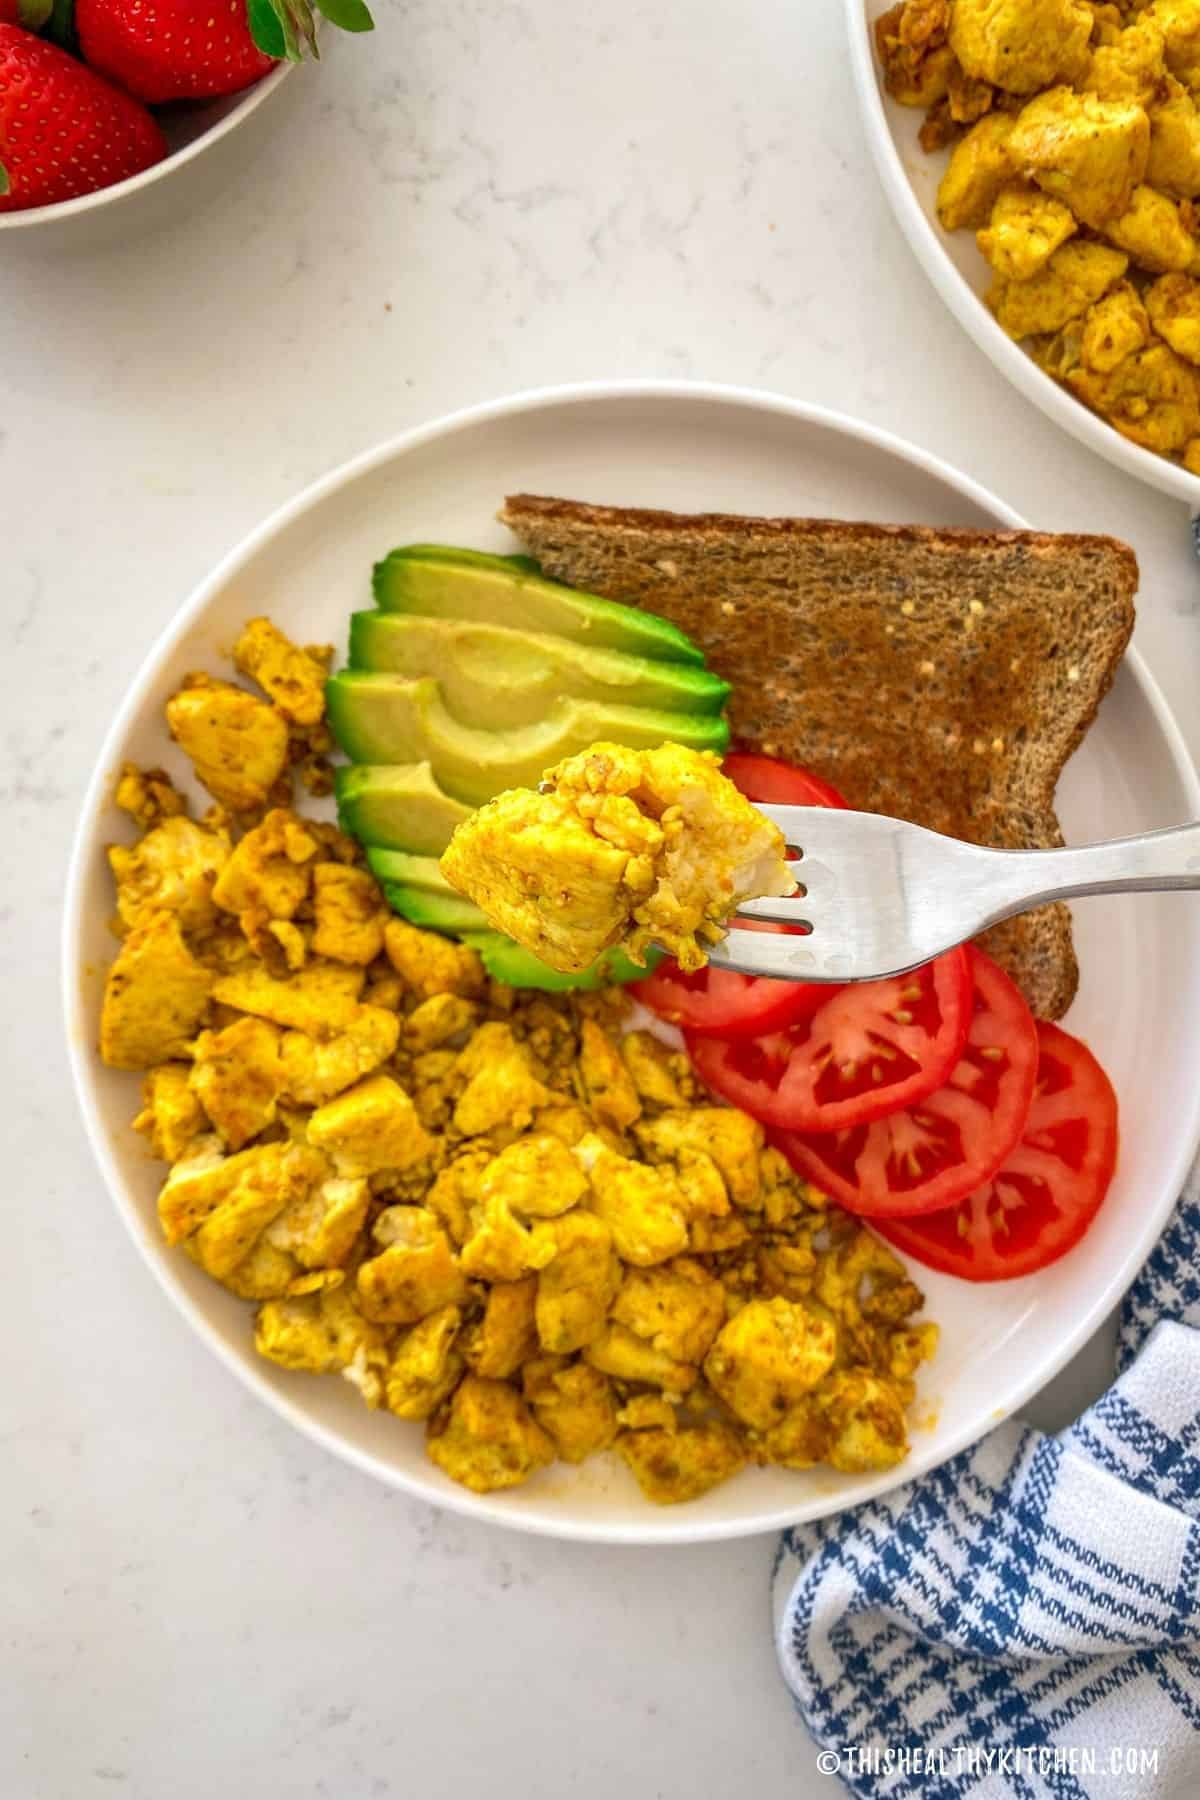 Fork full of vegan scrambled eggs being held over plate below.